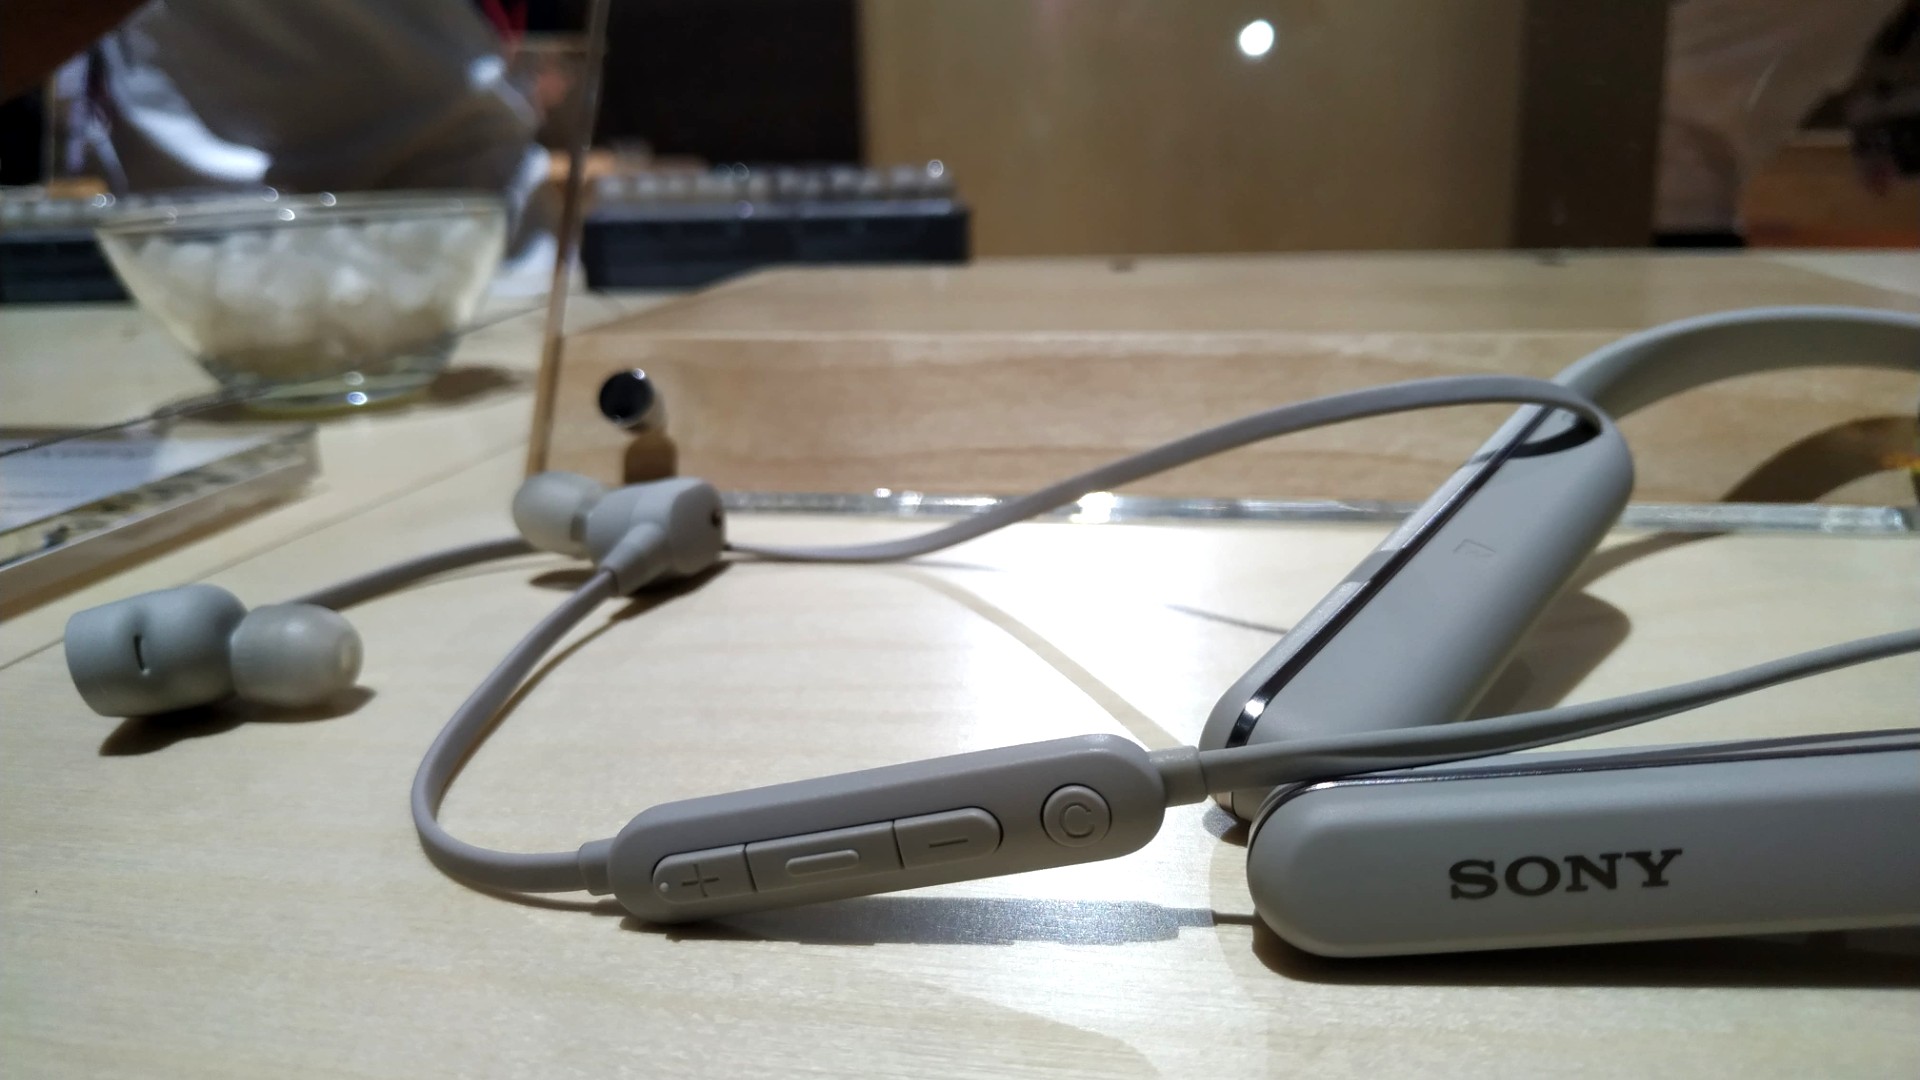 Hands on: Sony WI-1000XM2 wireless headphones review | TechRadar